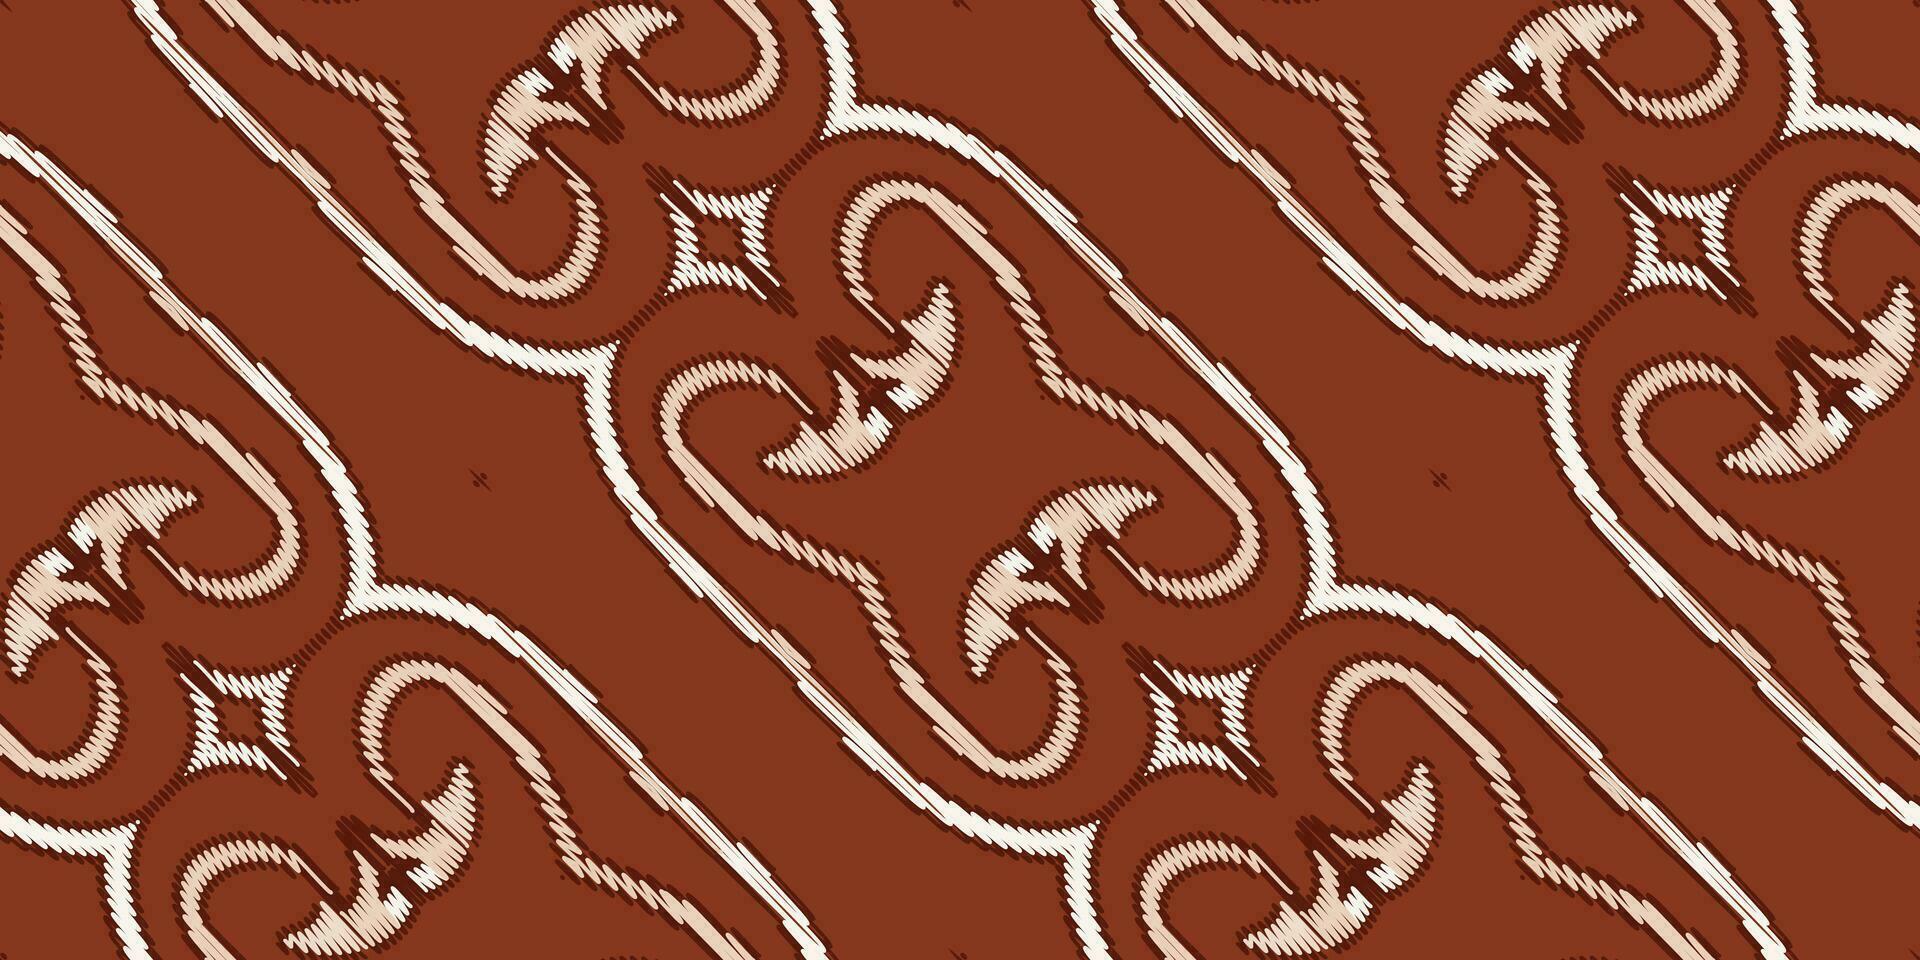 zijde kleding stof patola sari patroon naadloos Scandinavisch patroon motief borduurwerk, ikat borduurwerk vector ontwerp voor afdrukken structuur kleding stof Saree sari tapijt. Kurta vector patola Saree